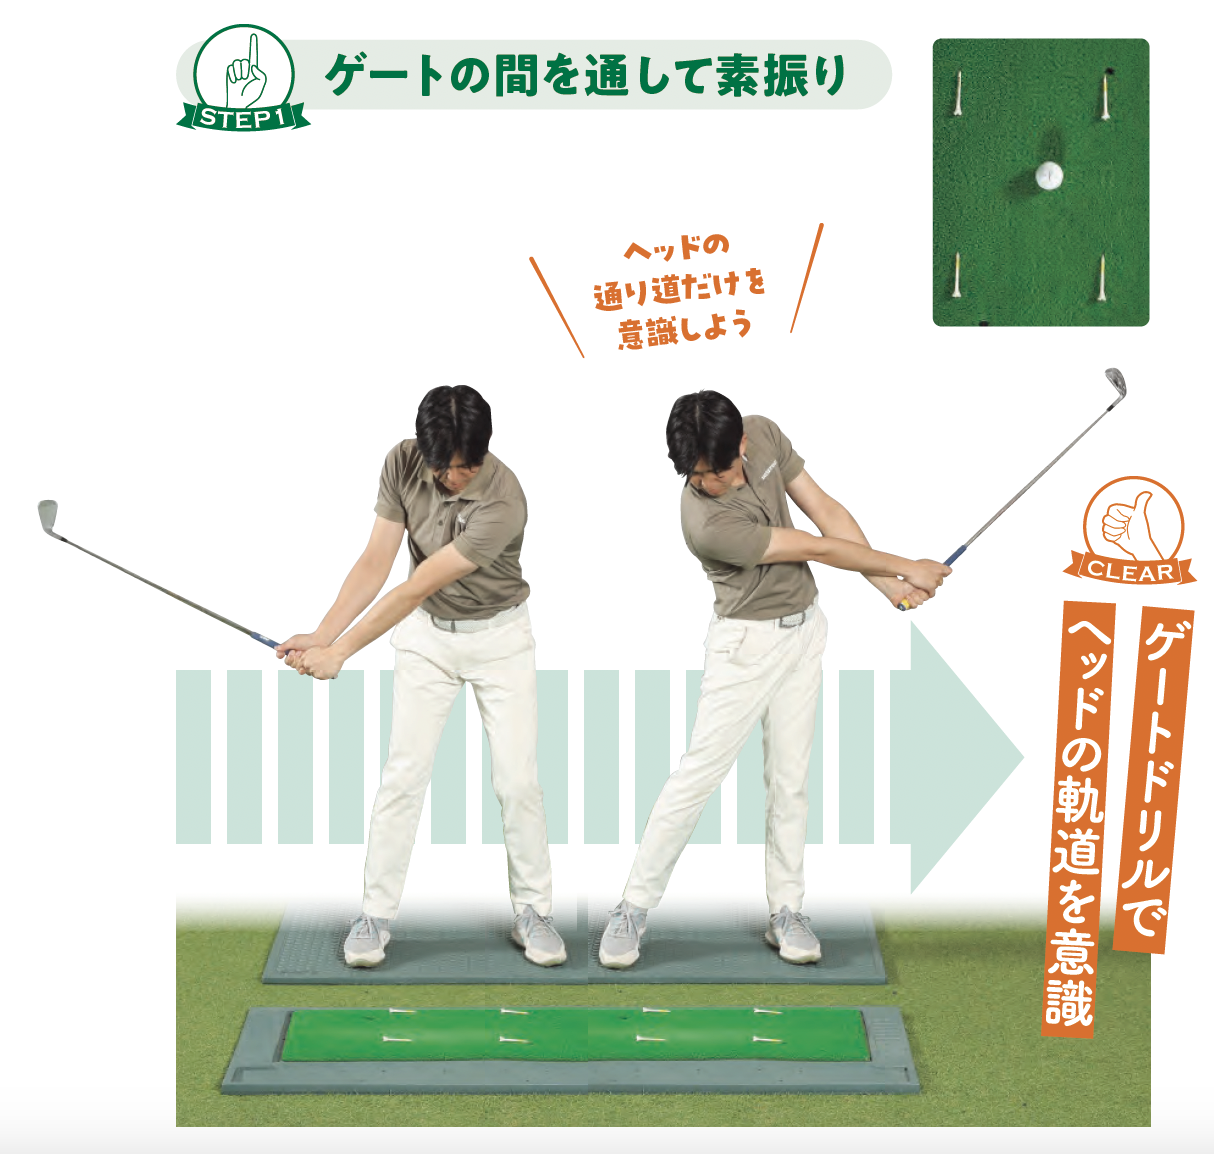 【STEP1】ゲートの間を通して素振り『ゴルフは右手の使い方だけ覚えれば上手くなる』